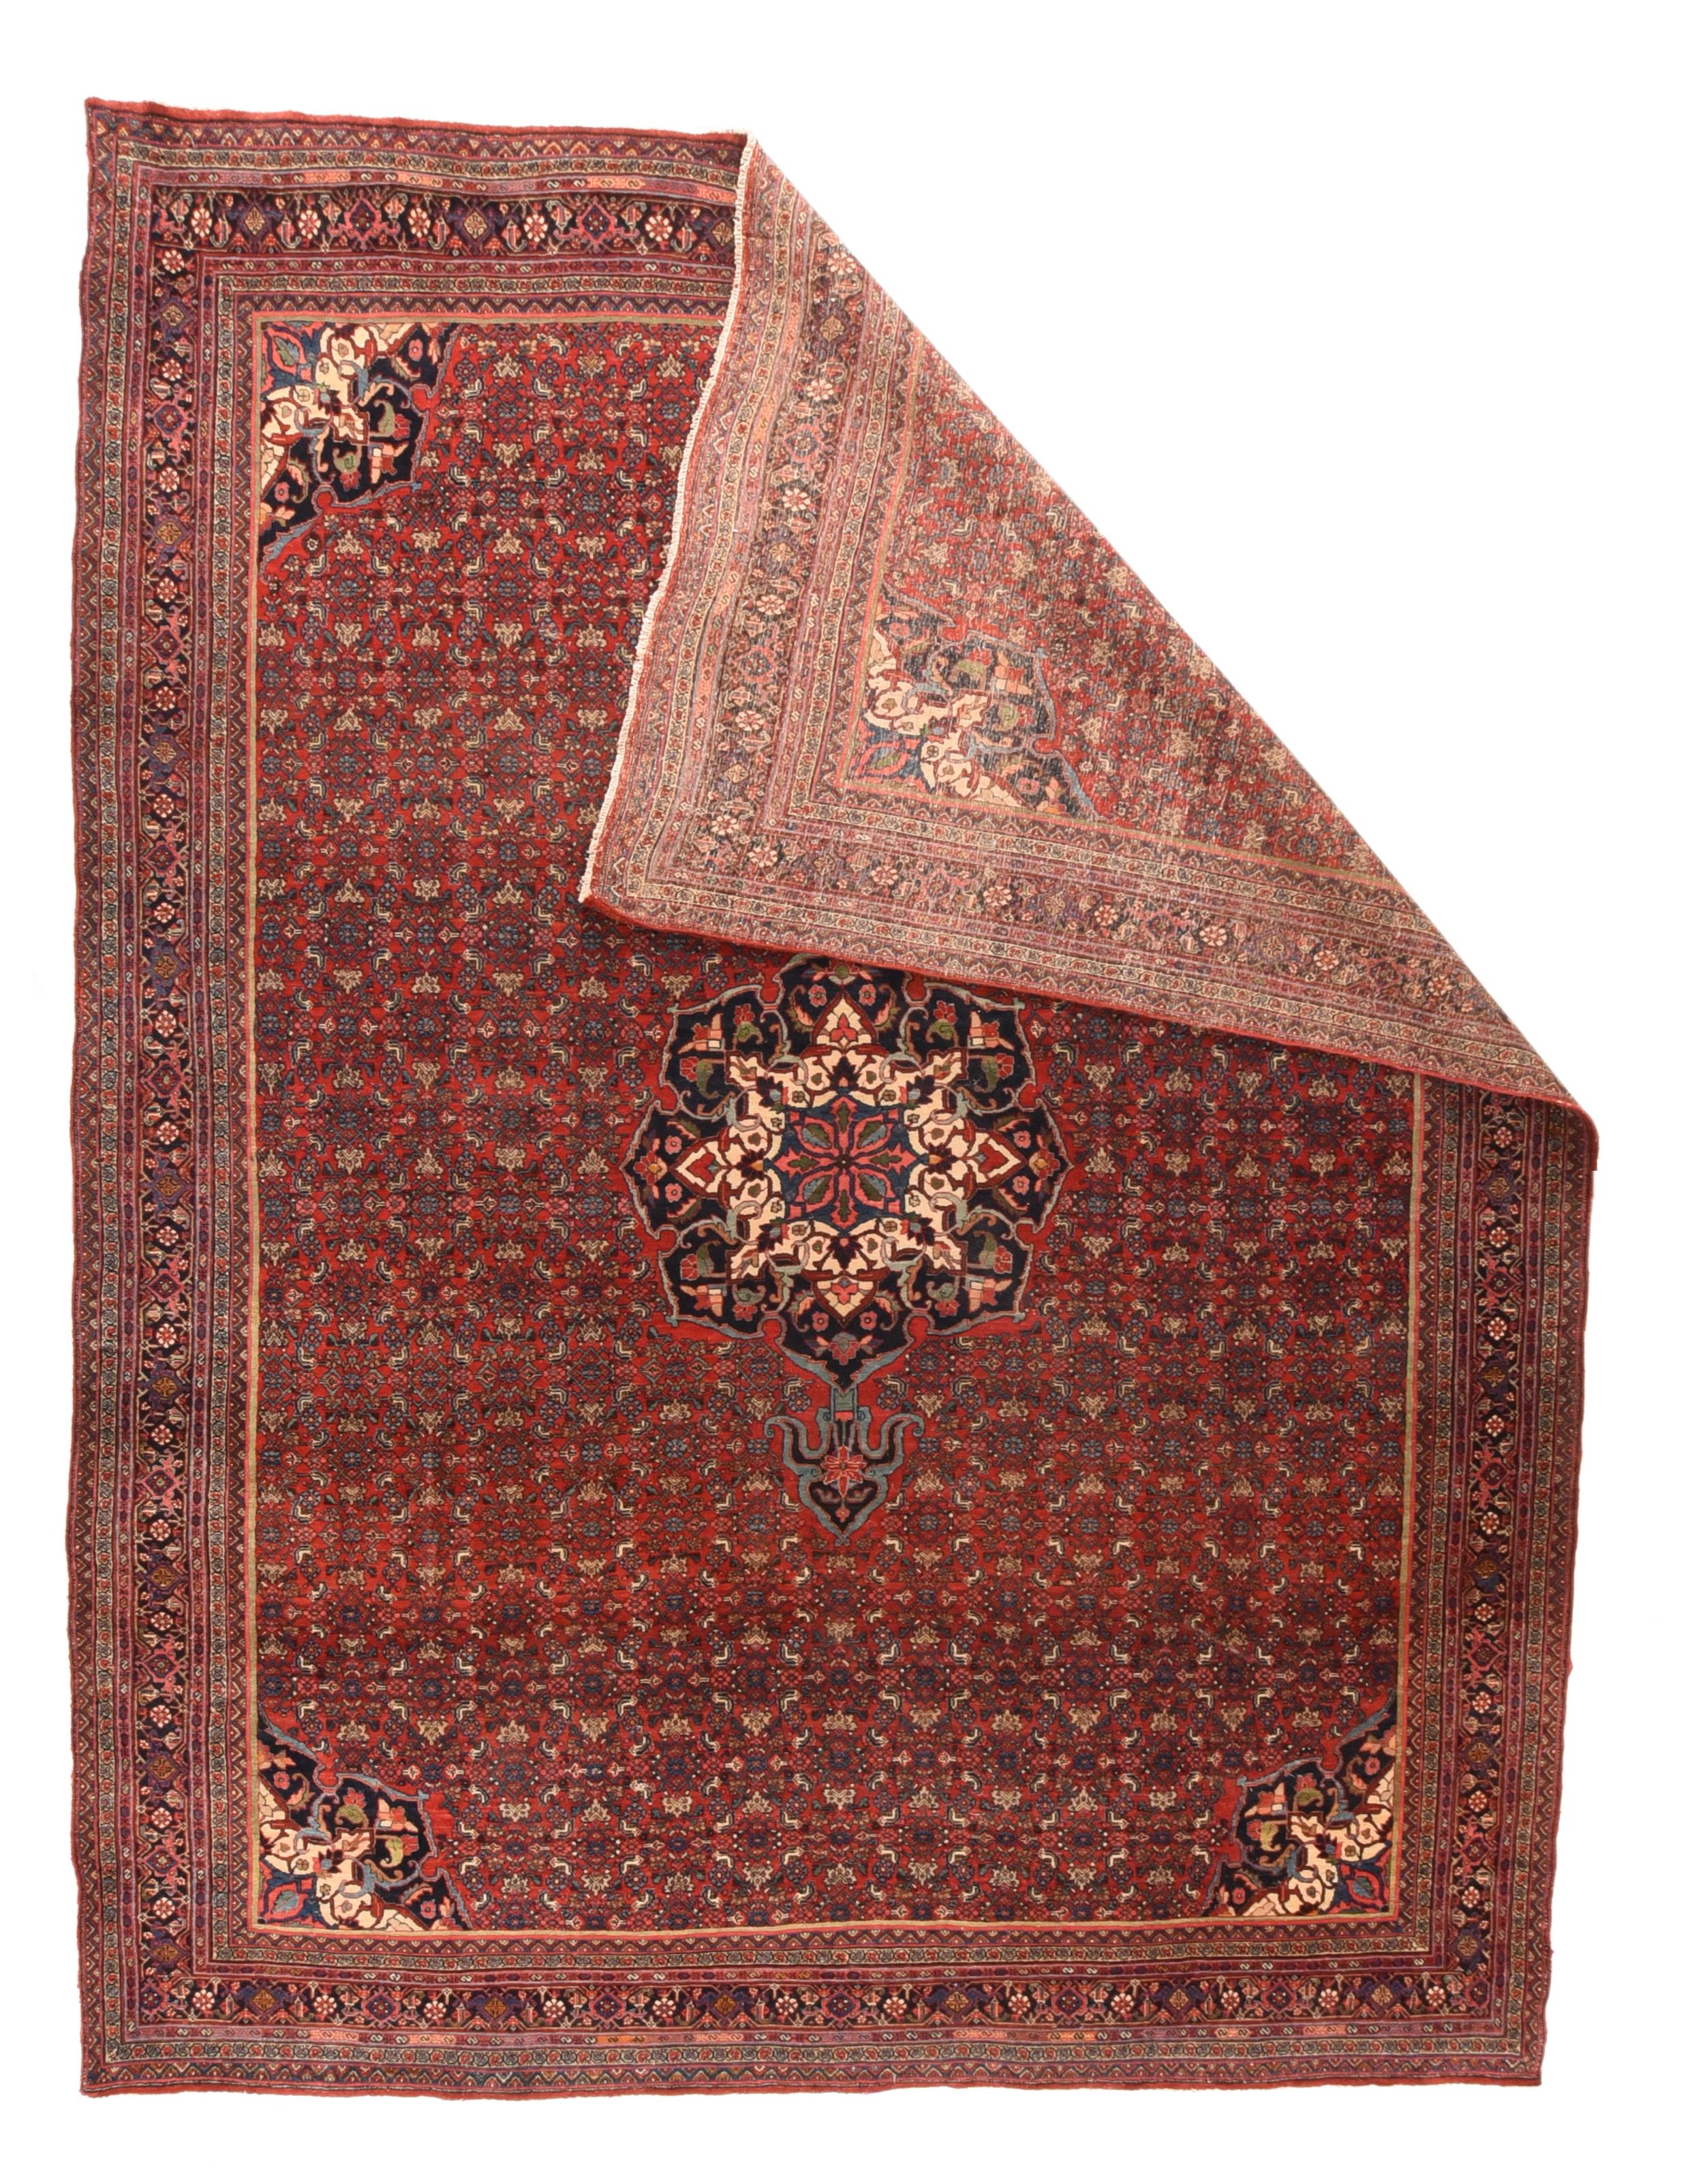 Ce tapis de ville kurde de Perse occidentale sur coton, relativement moderne, conserve les mains traditionnelles en forme de planche et le tissage ultra-compact. Le champ écarlate est orné d'un petit hérati répété, le tout soutenant un médaillon